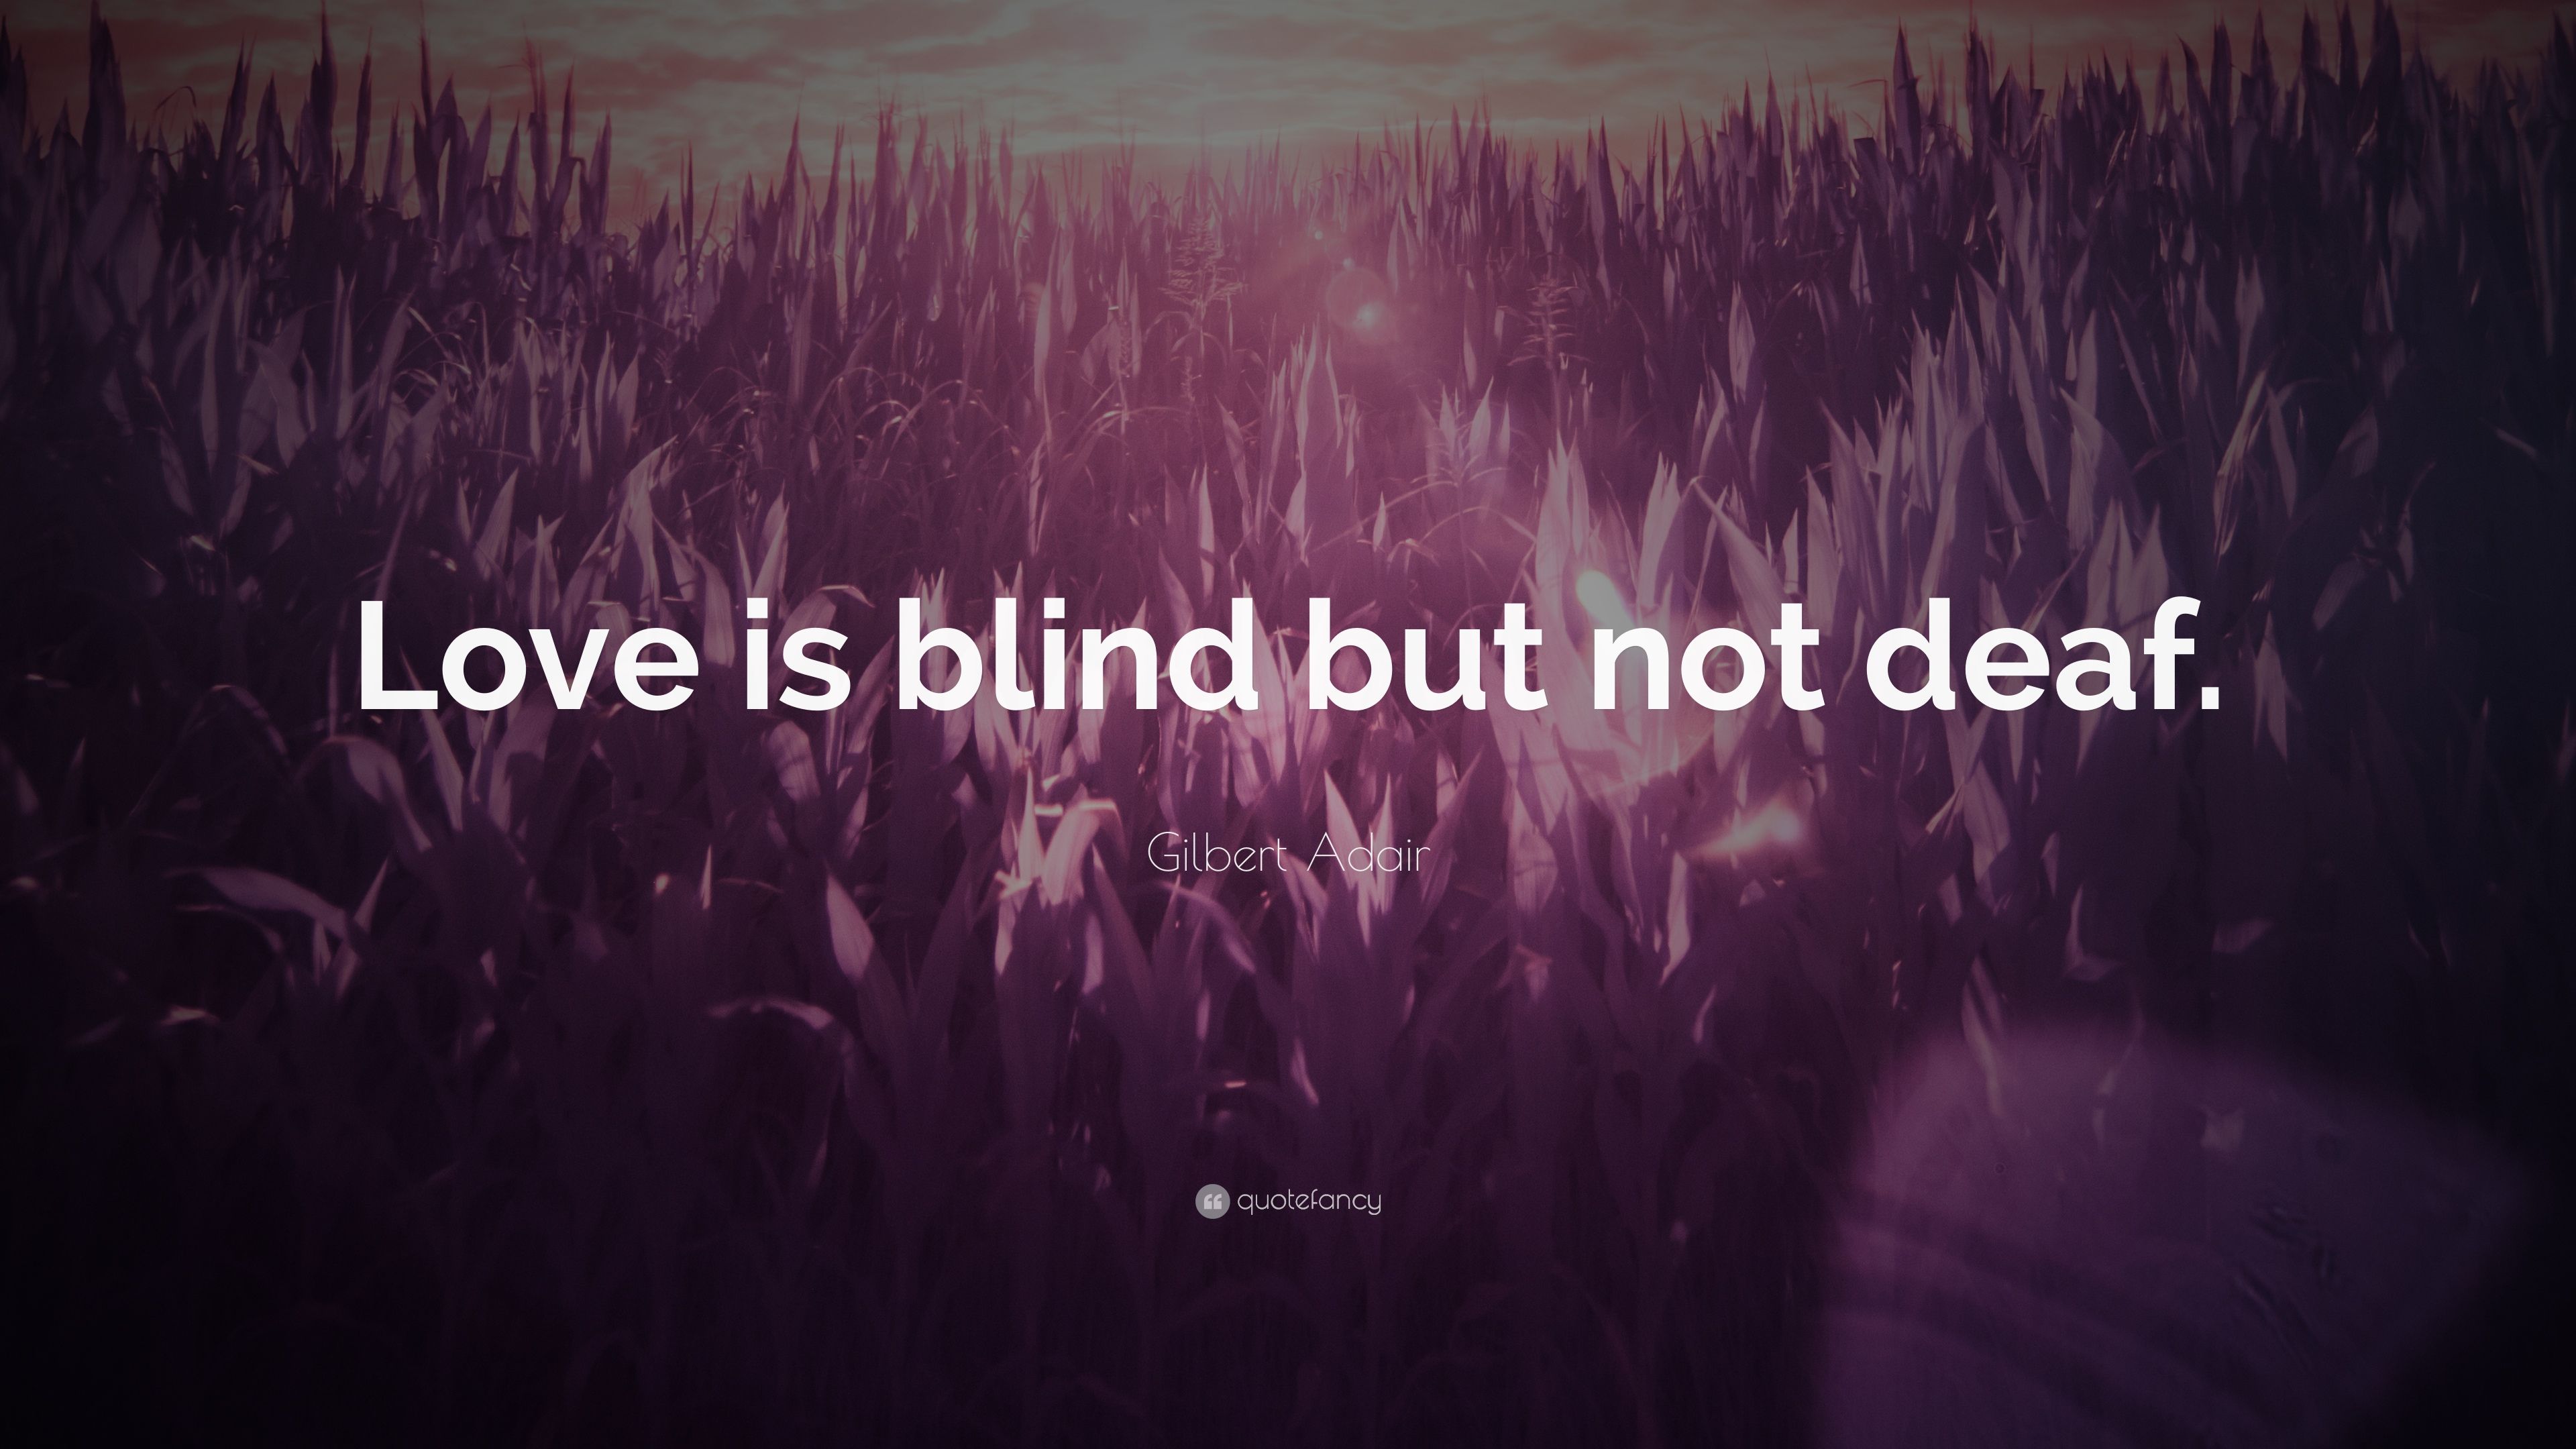 Gilbert Adair Quote: “Love is blind but not deaf.” 7 wallpaper